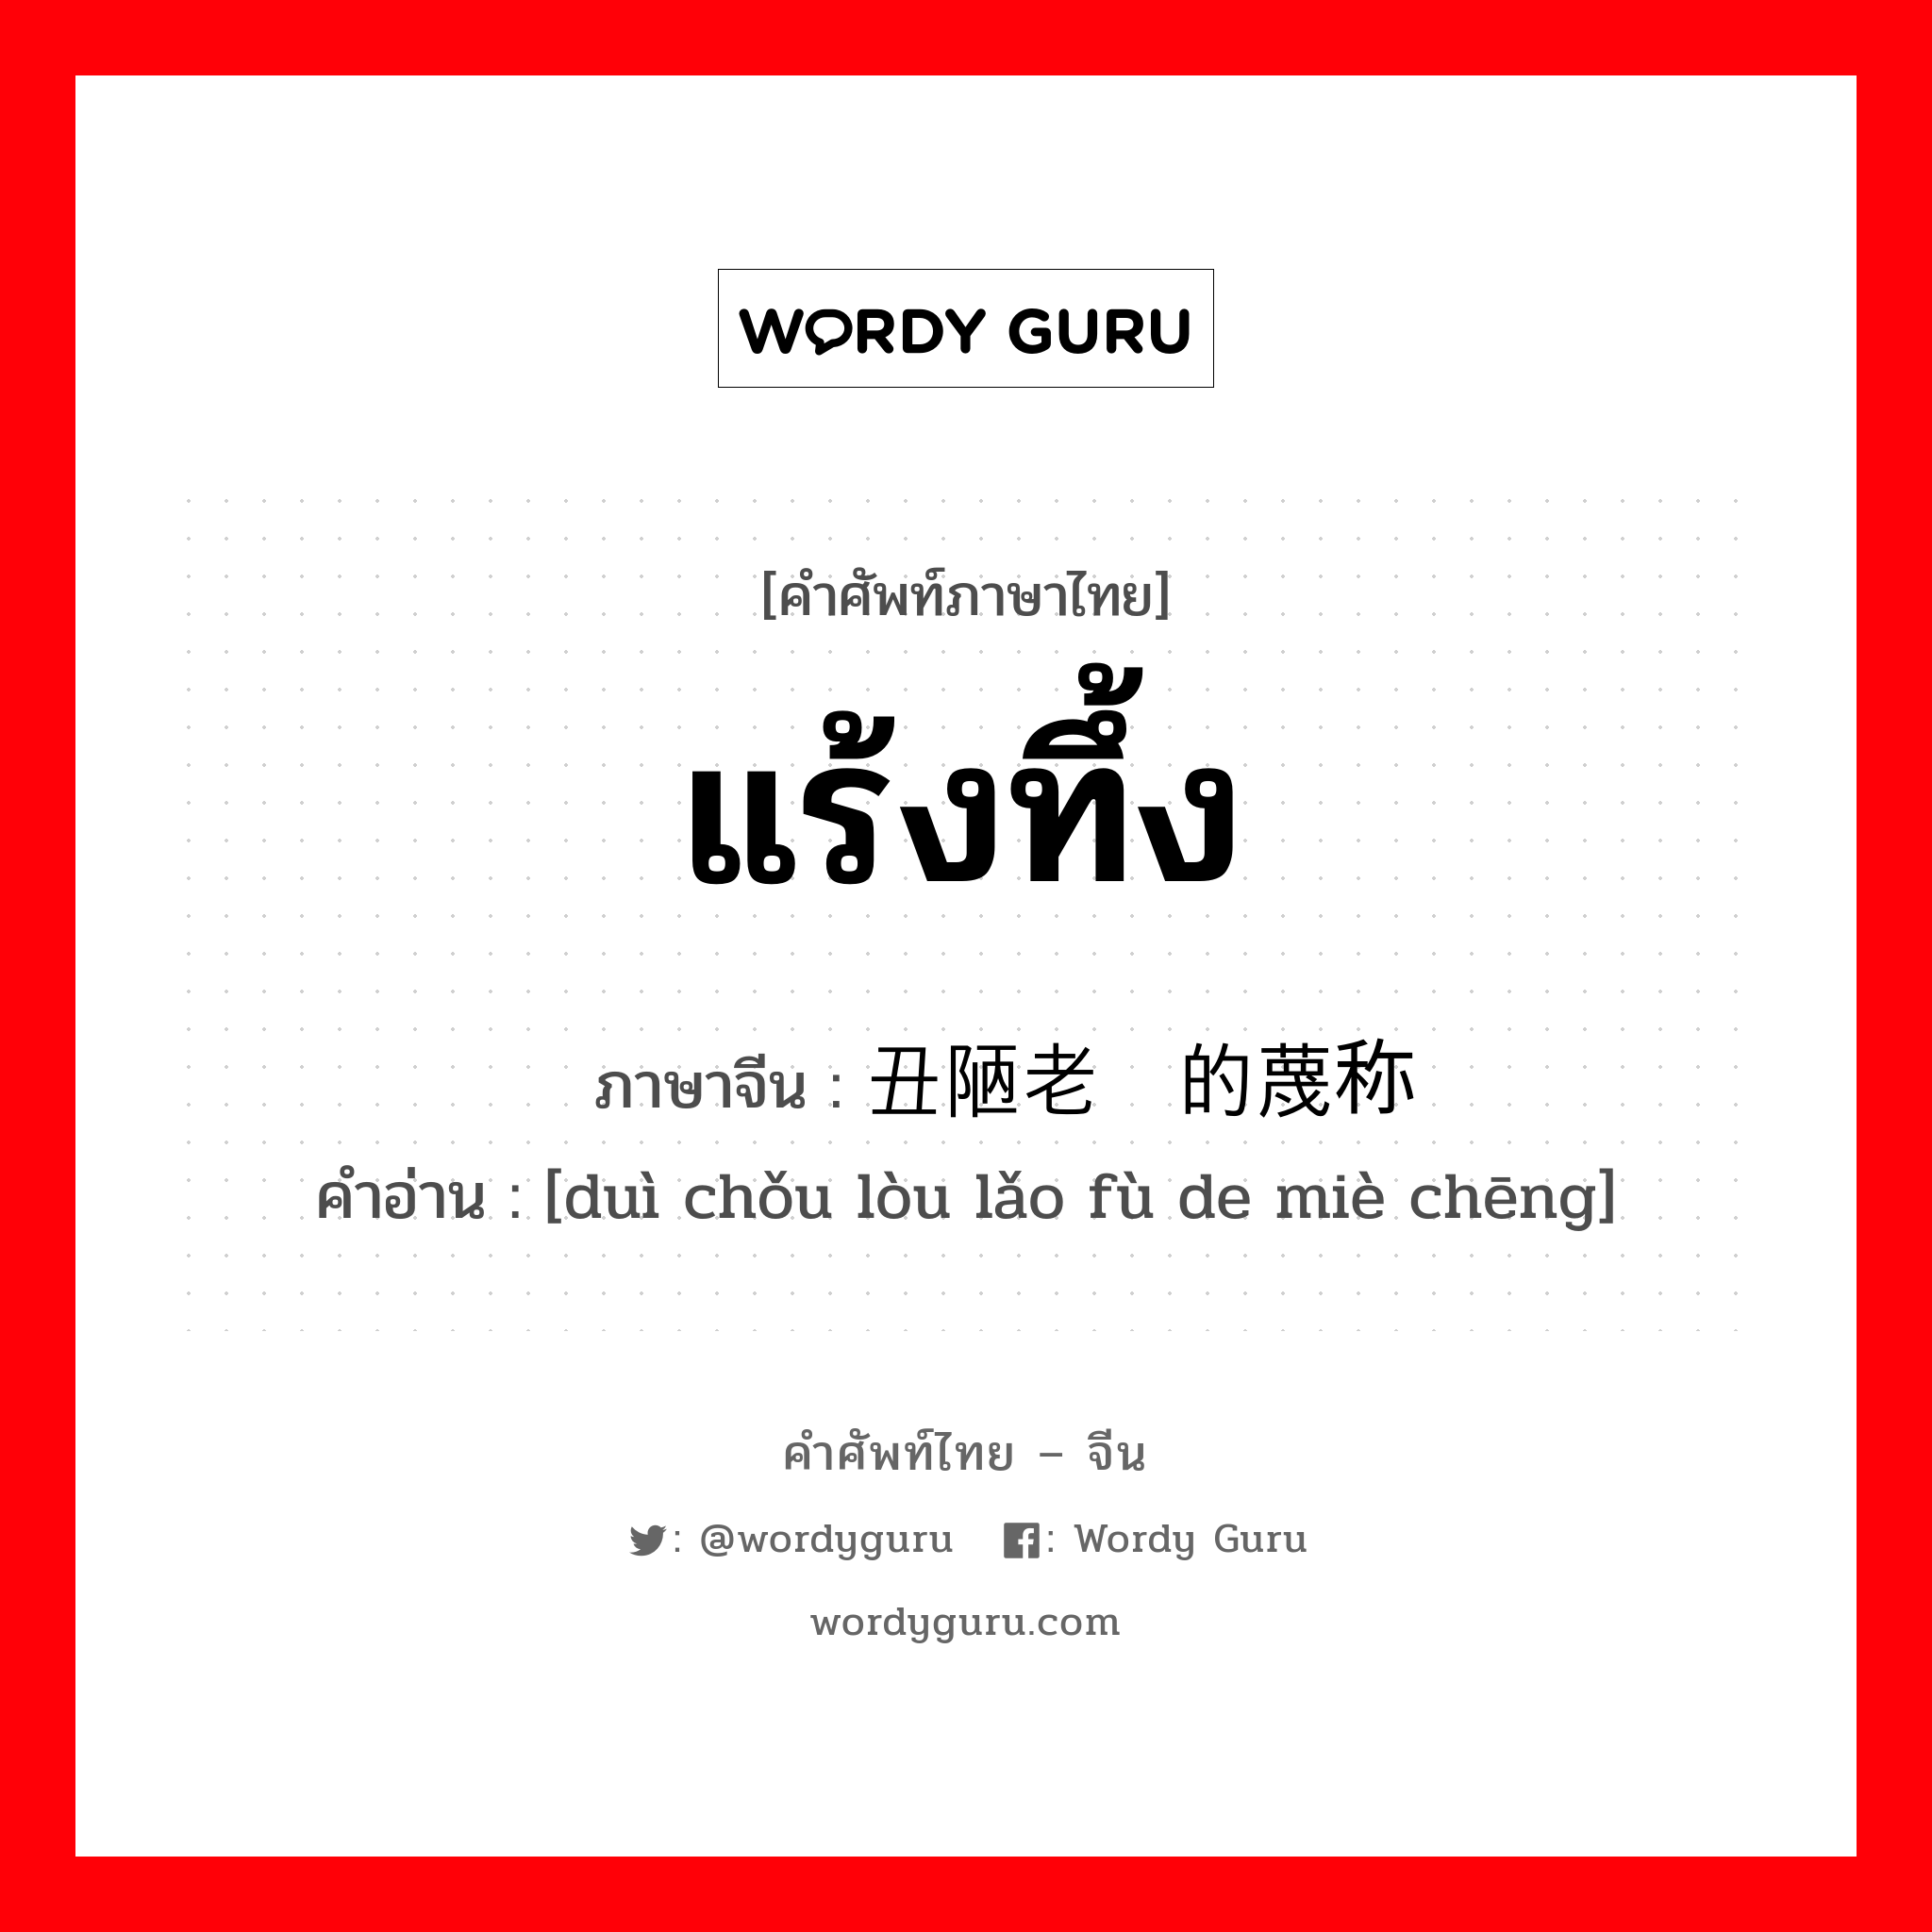 แร้งทึ้ง ภาษาจีนคืออะไร, คำศัพท์ภาษาไทย - จีน แร้งทึ้ง ภาษาจีน 对丑陋老妇的蔑称 คำอ่าน [duì chǒu lòu lǎo fù de miè chēng]